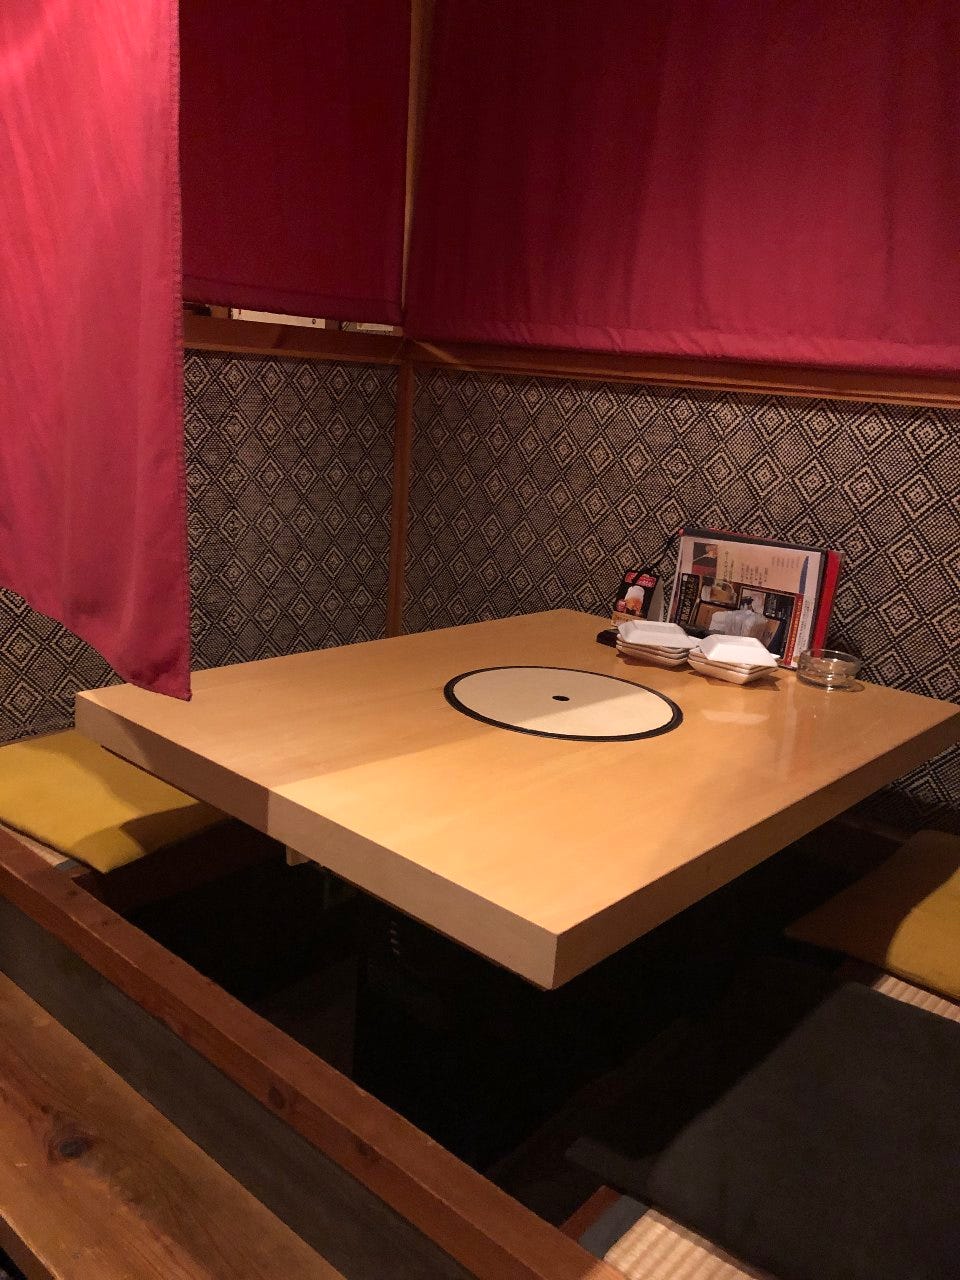 21年 最新グルメ 米子のレストラン カフェ 居酒屋 女子会におすすめのお店のネット予約 鳥取版